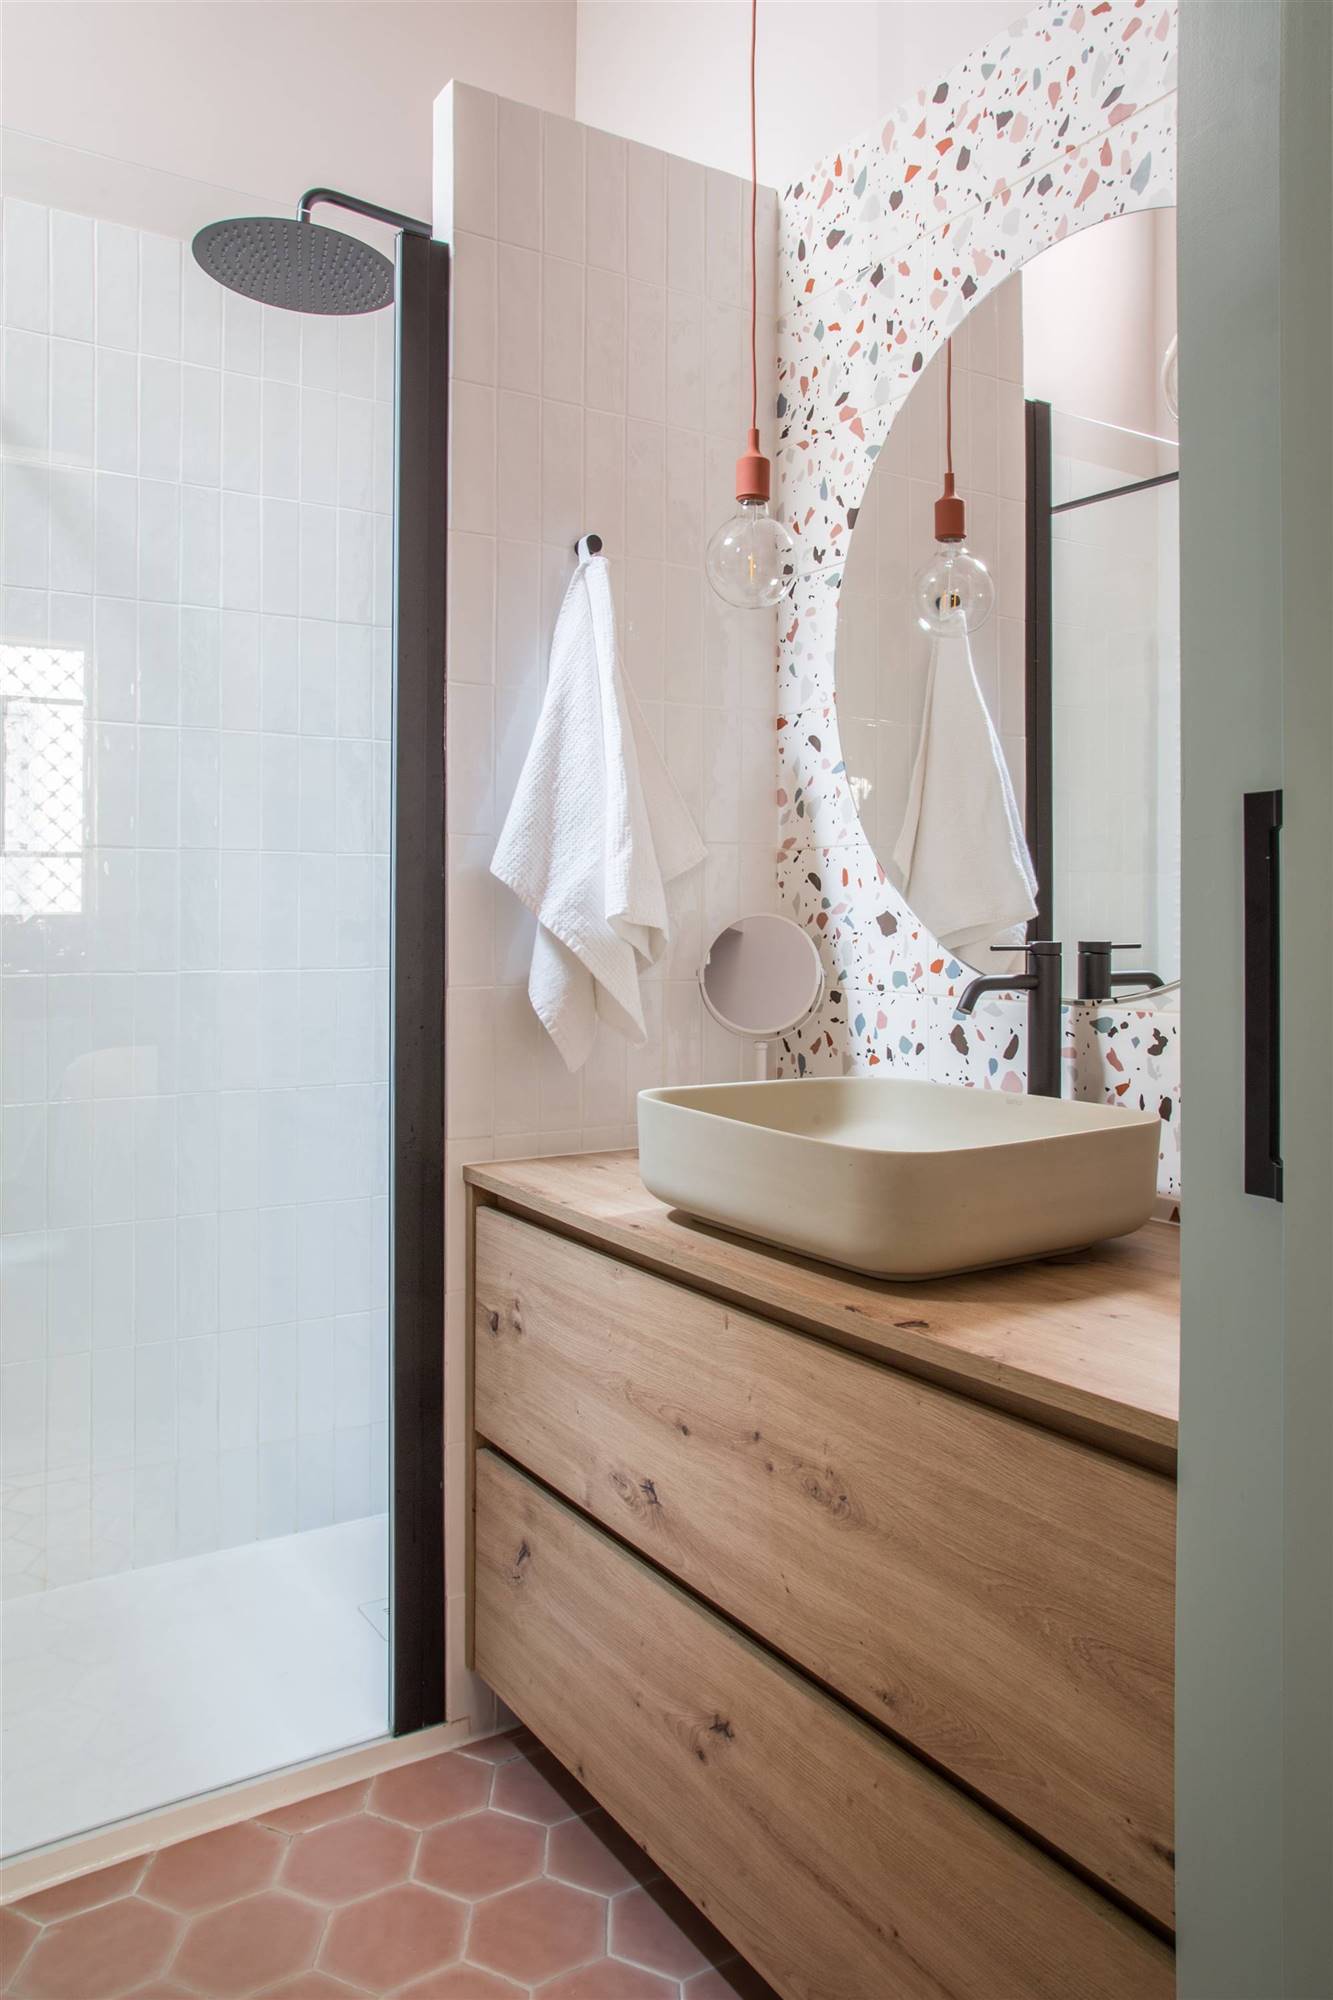 Baño con ducha, mueble de madera, espejo redondo y pared de terrazo